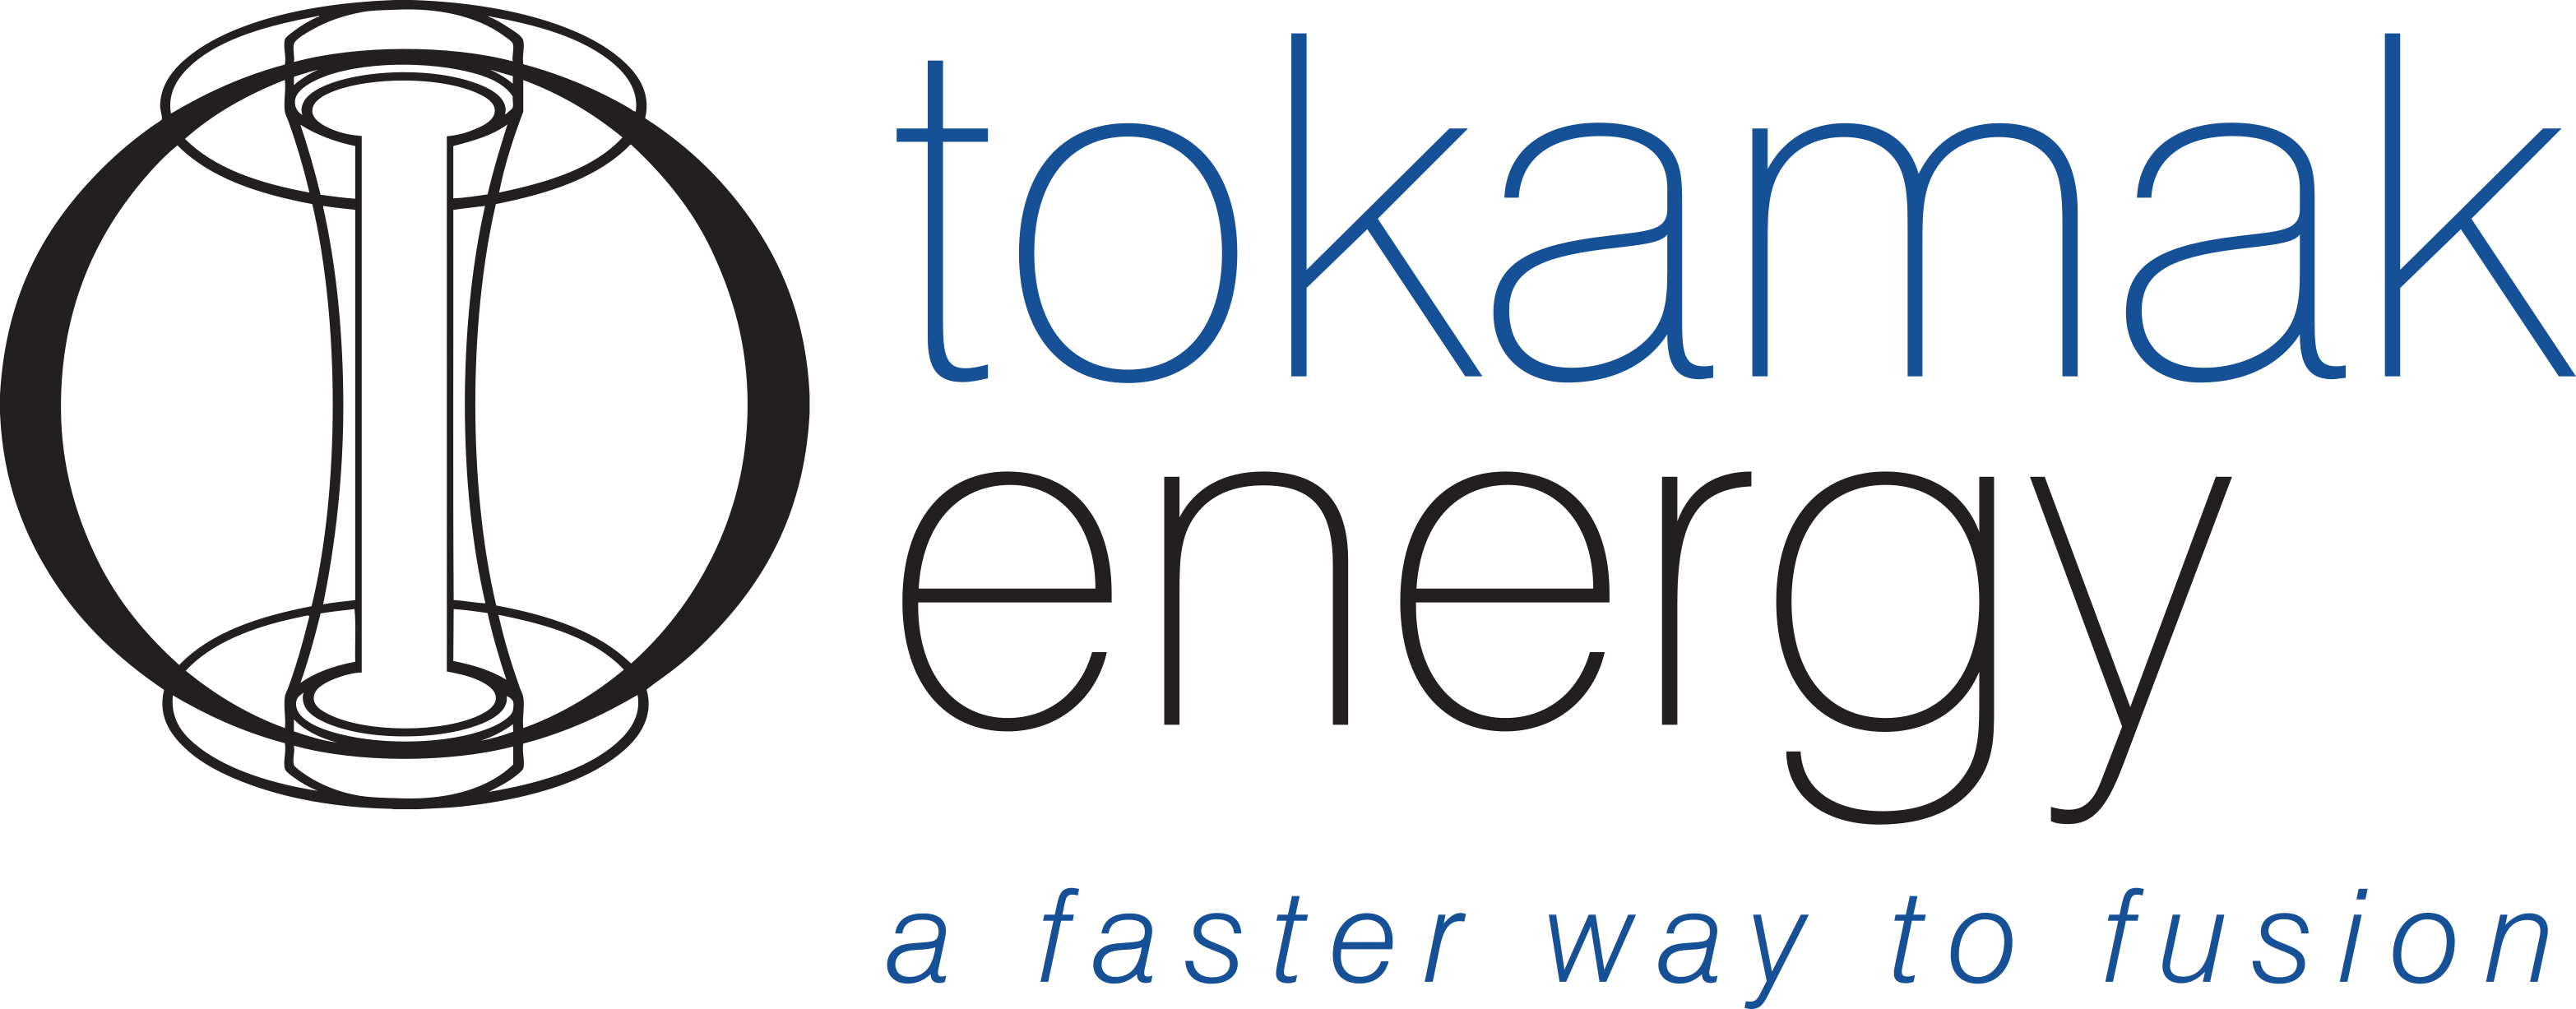 Tokamak Energy